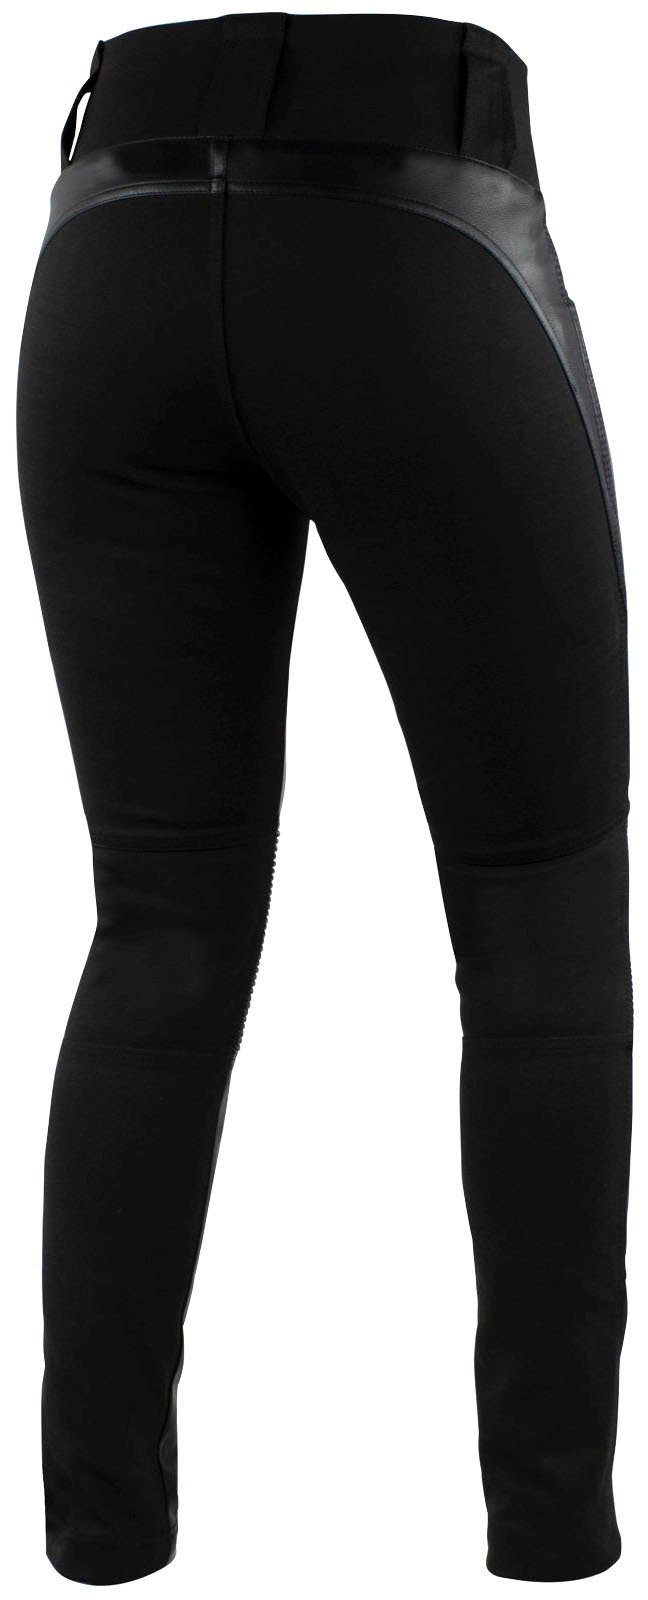 Falco Motorradhose Leder-Leggings für Damen, Ergonomische Passform und  integrierte Stretcheinsätze im Kniebereich